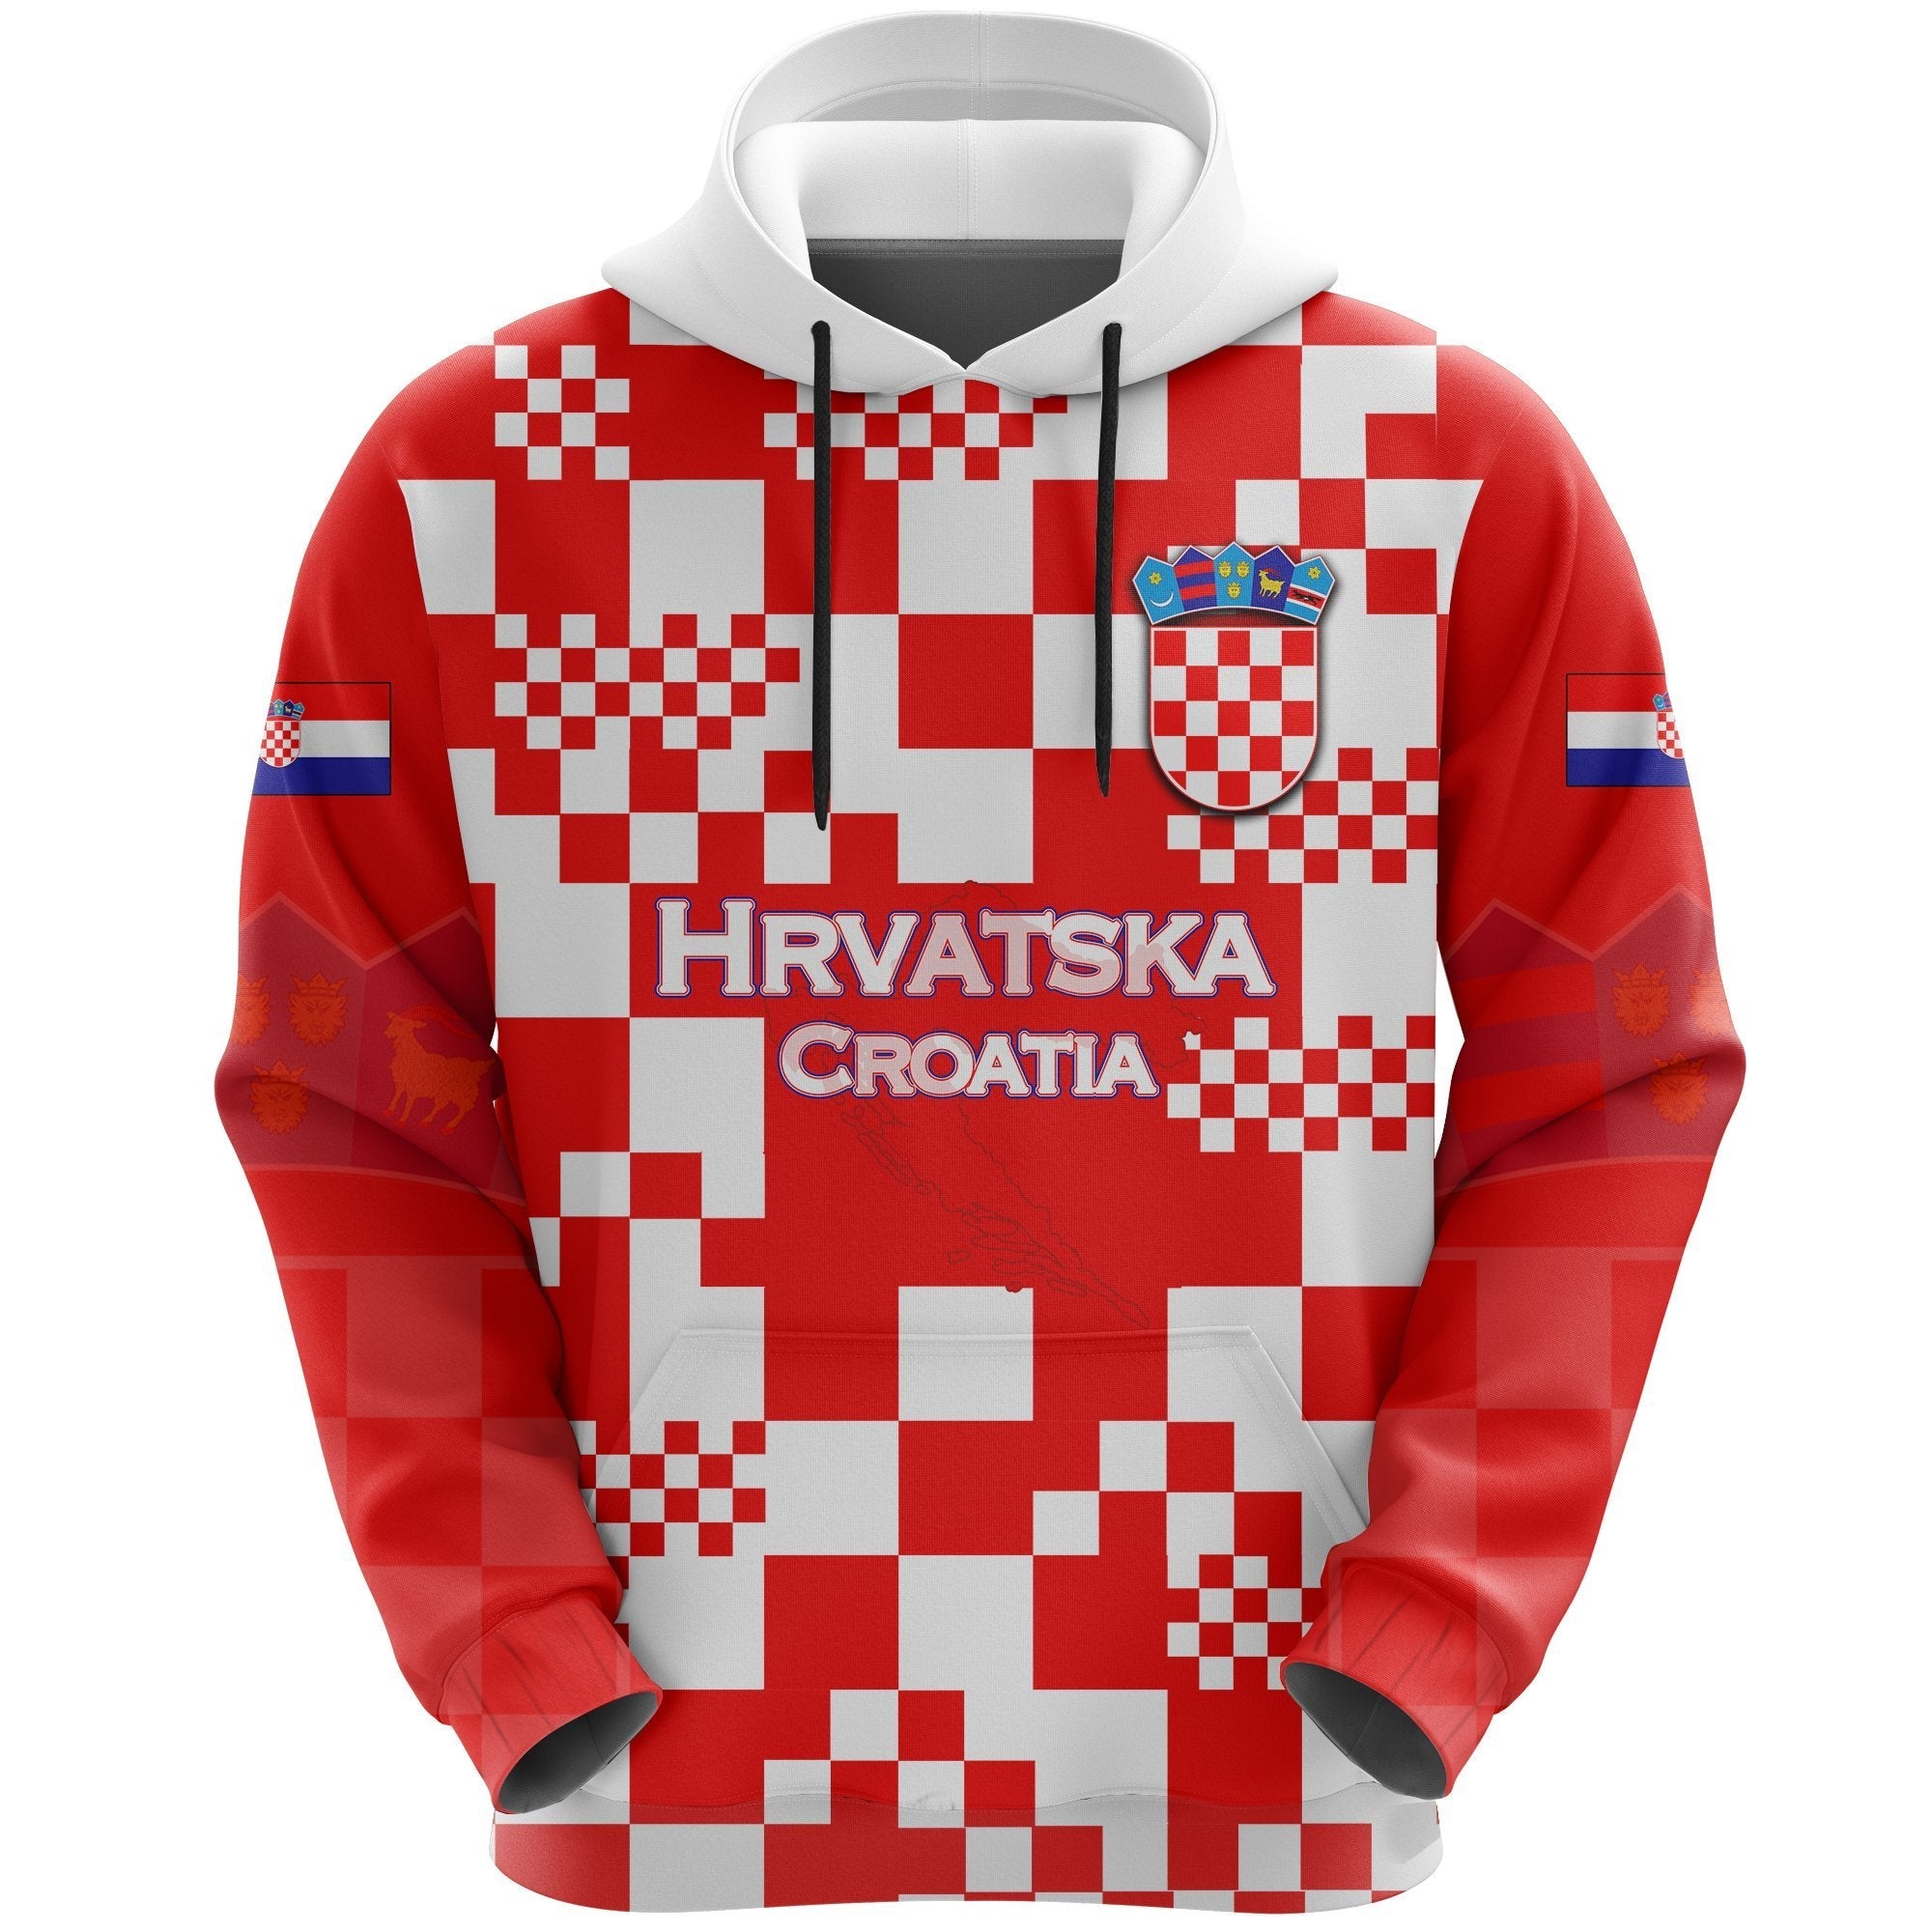 hrvatska-croatia-hoodie-checkerboard